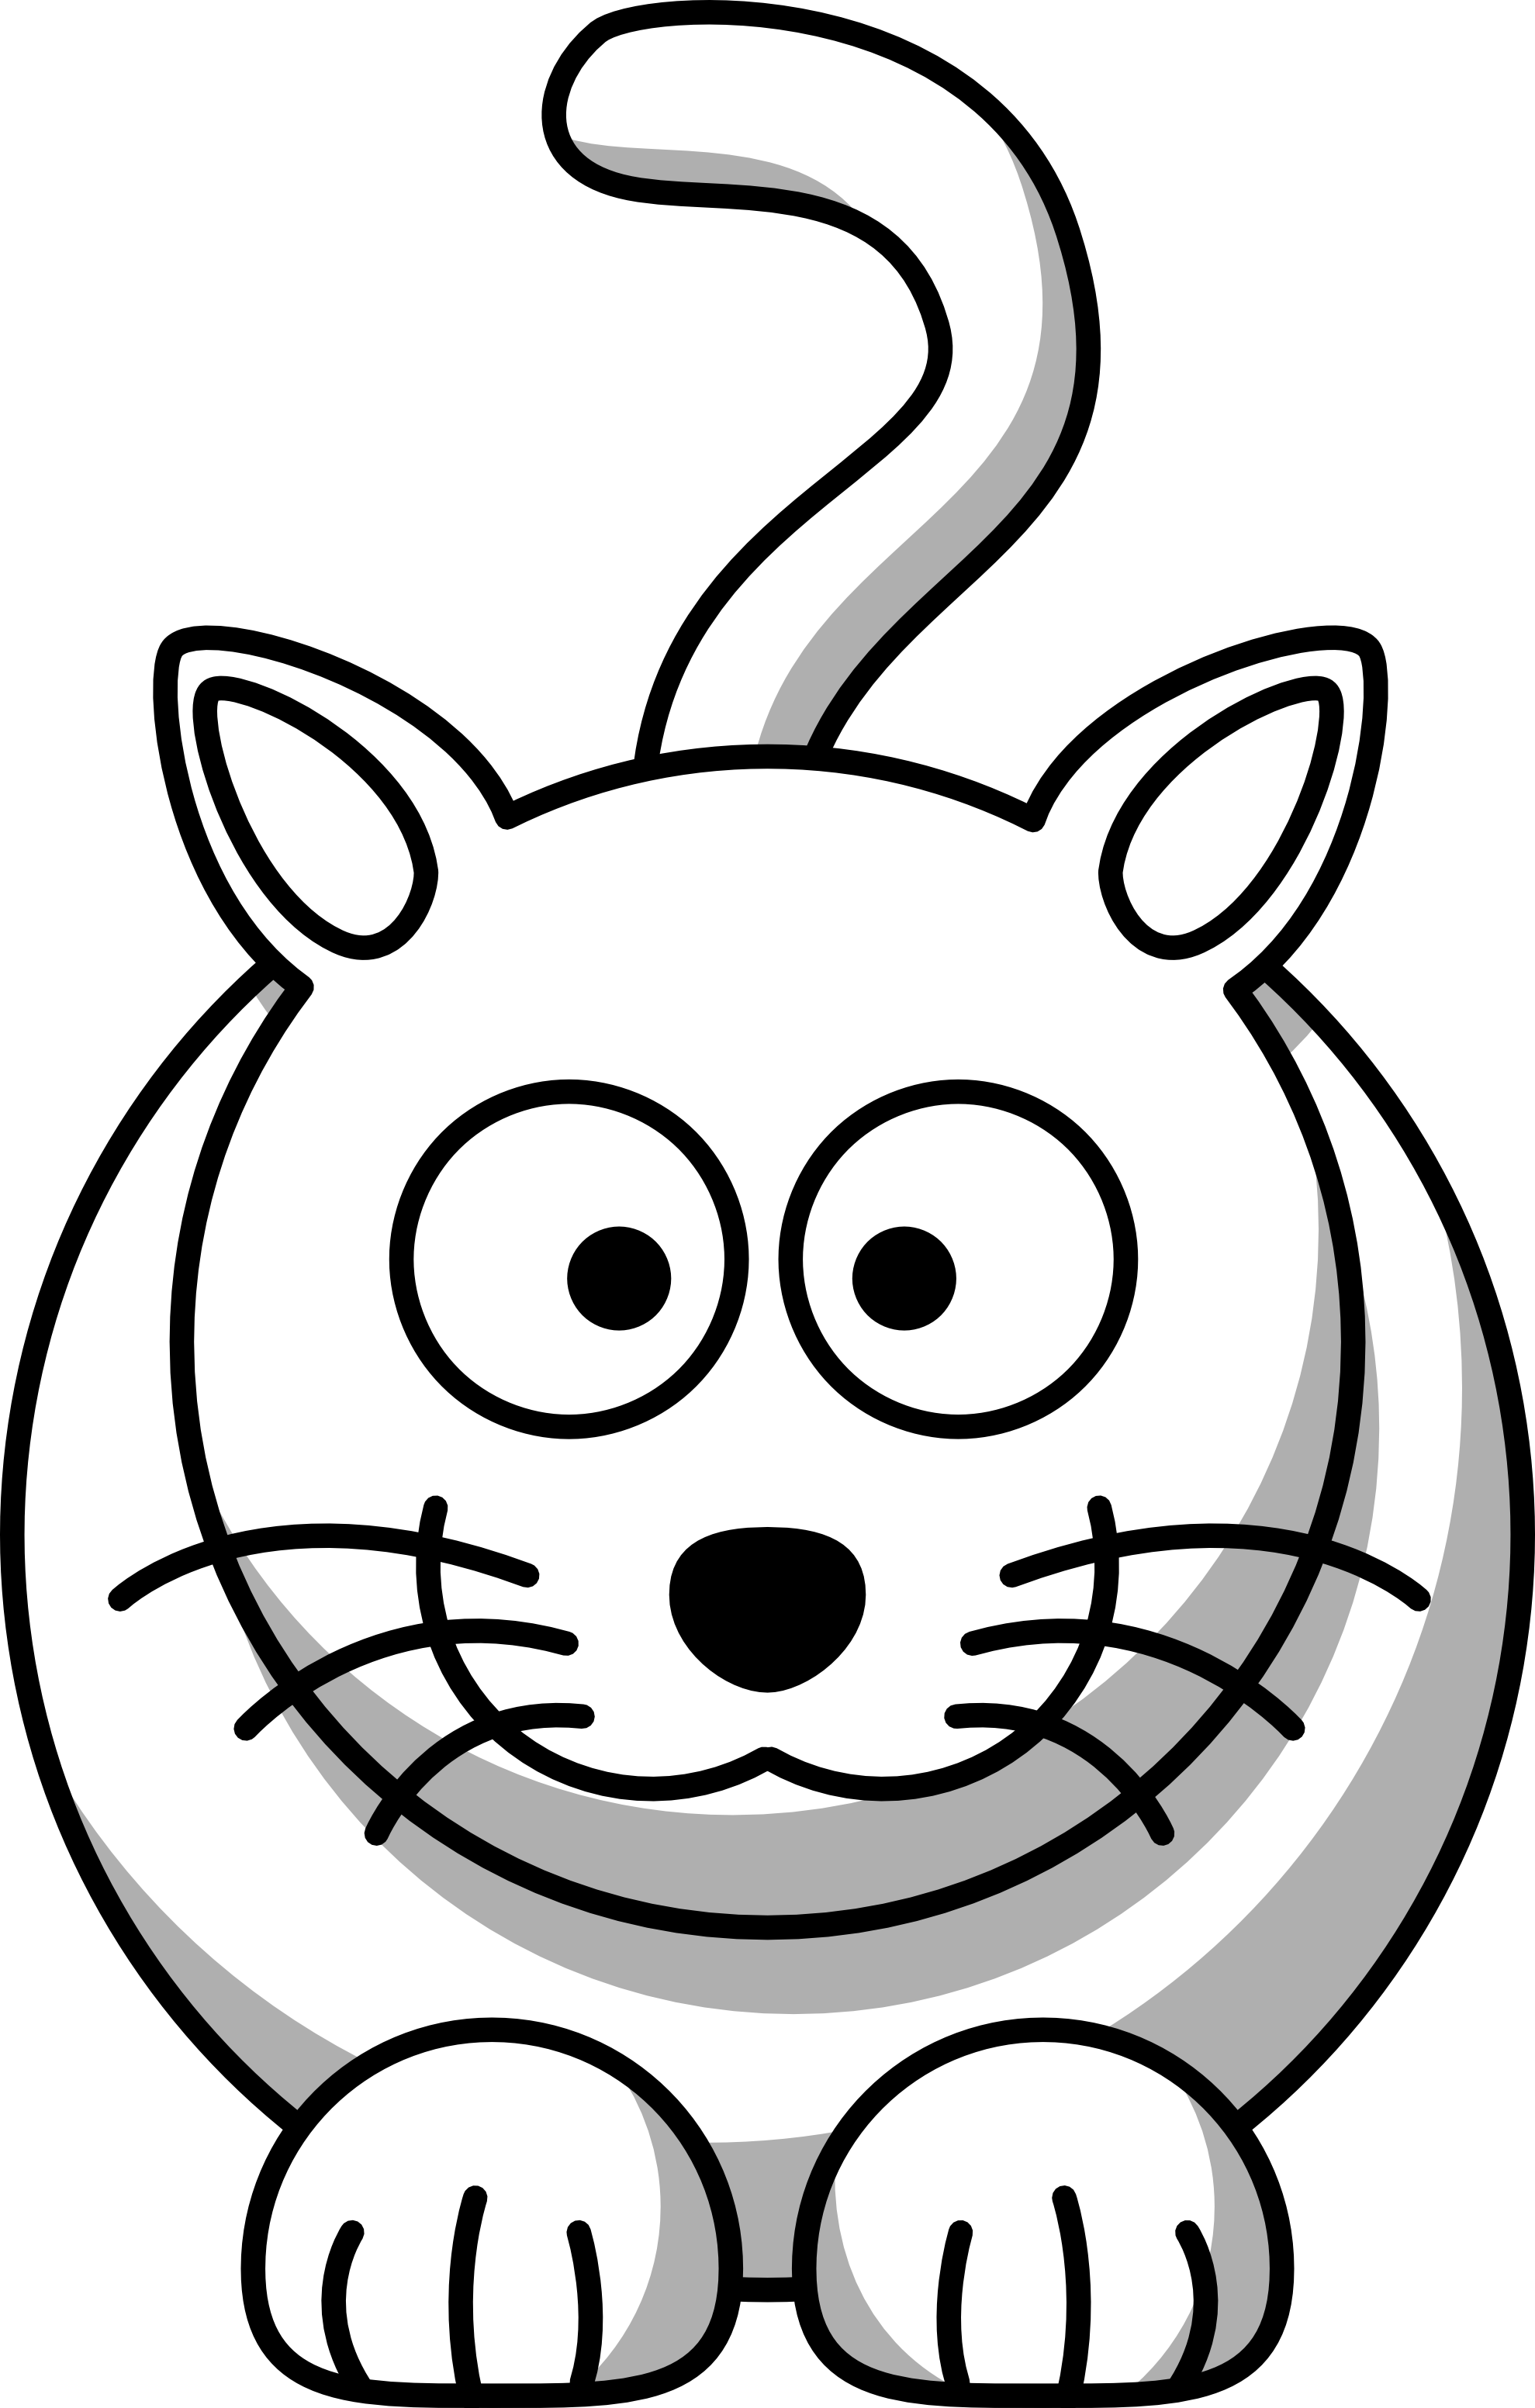 Clip Art: Lemmling Cartoon Cat Scalable Vector ... - ClipArt Best ...